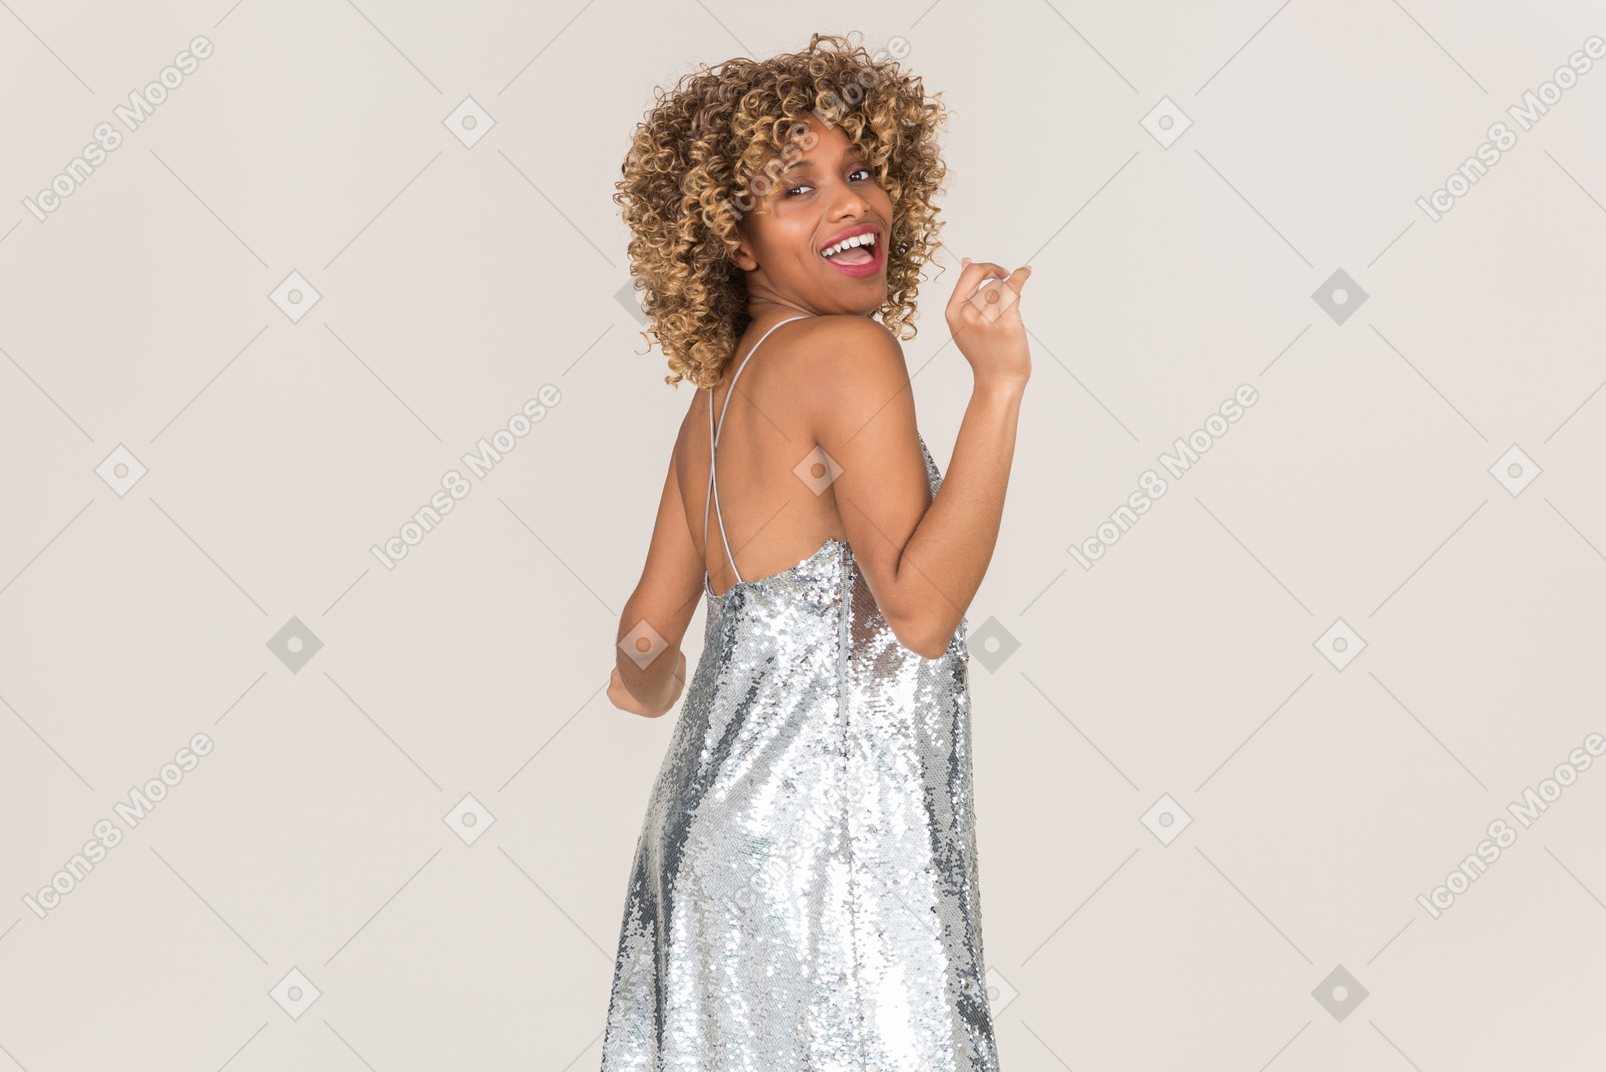 Young woman in shining grey dress dancing